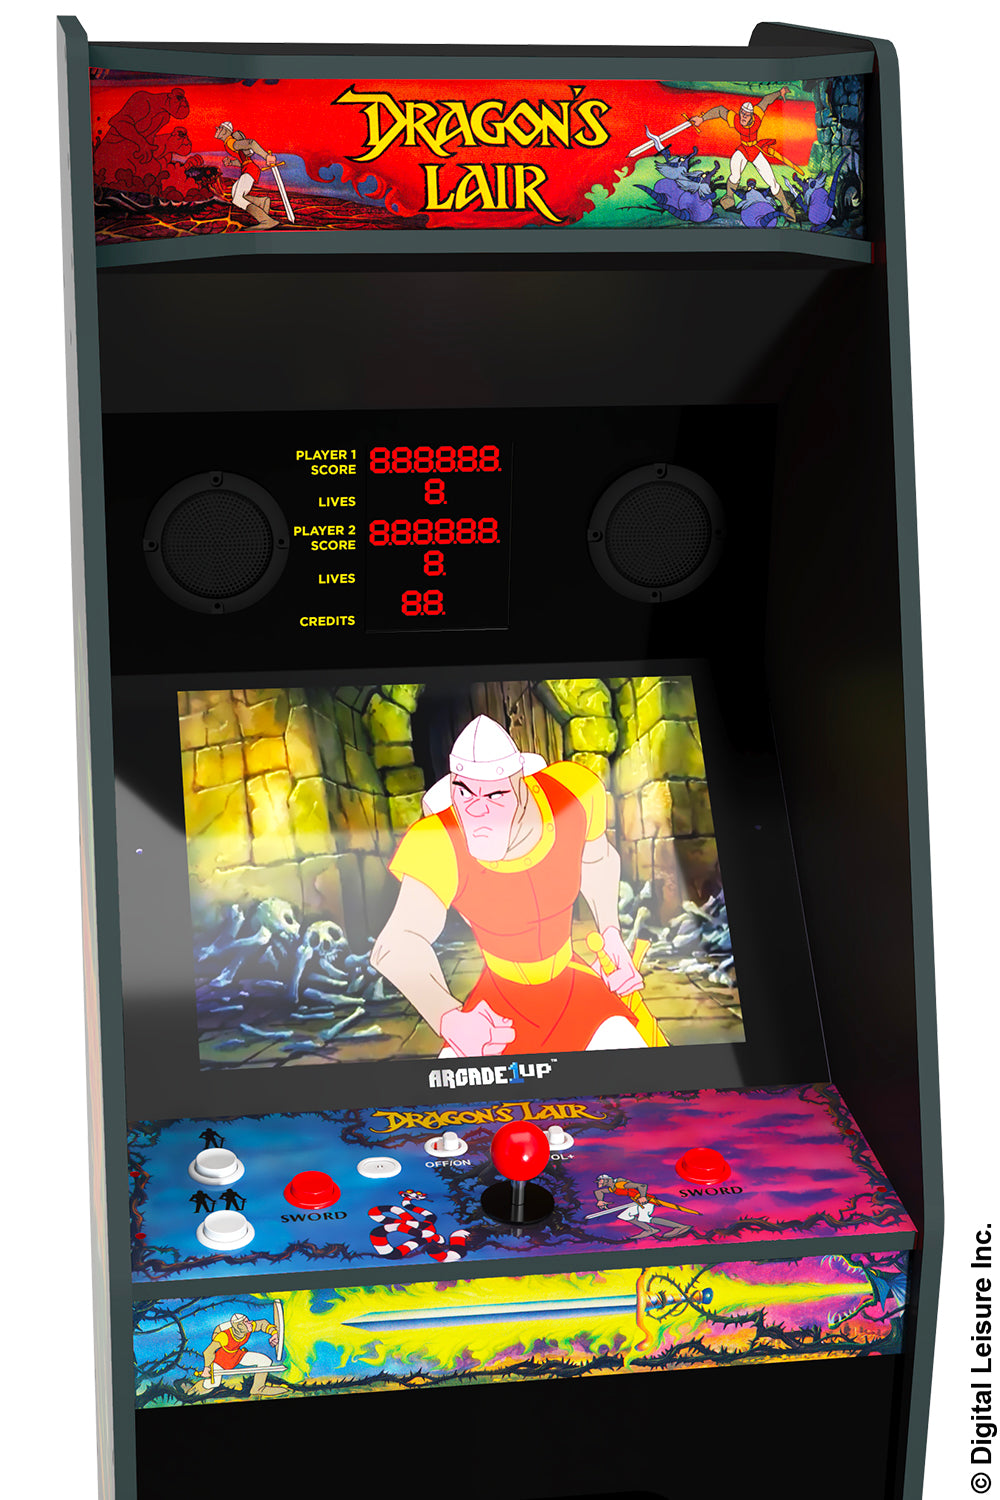 Dragon’s Lair Arcade Machine